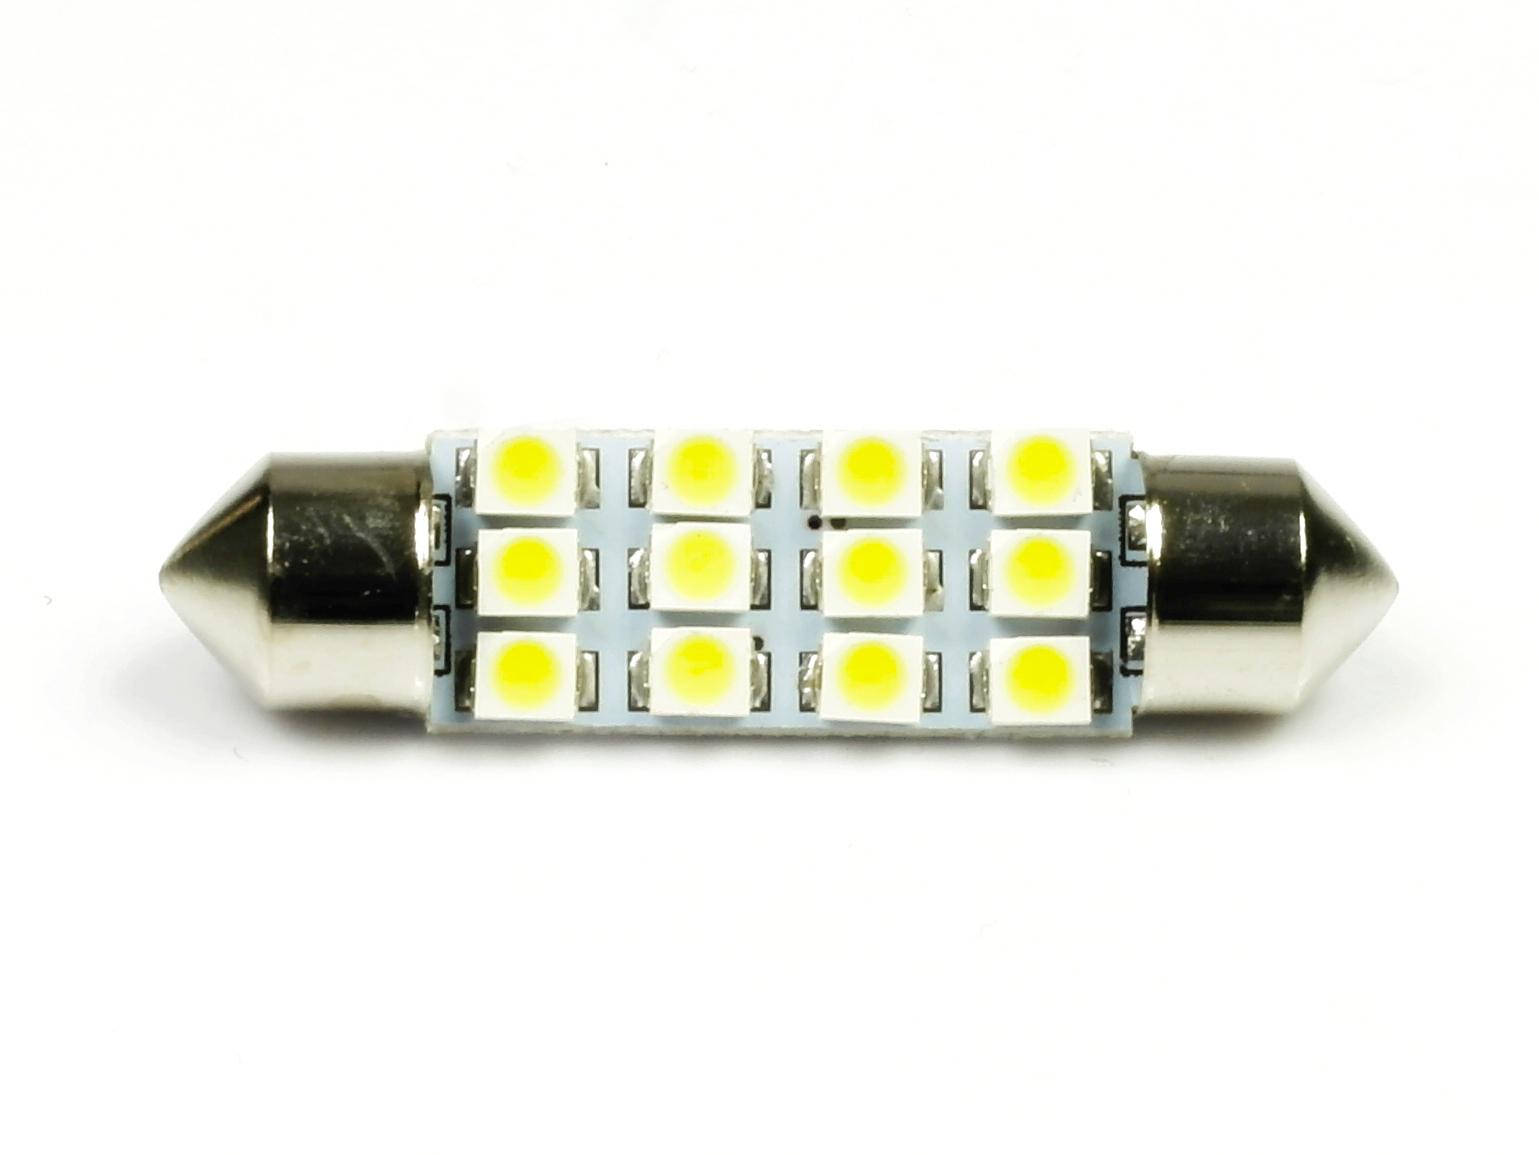 Interlook LED auto žárovka LED C5W 12 SMD 1210 39mm